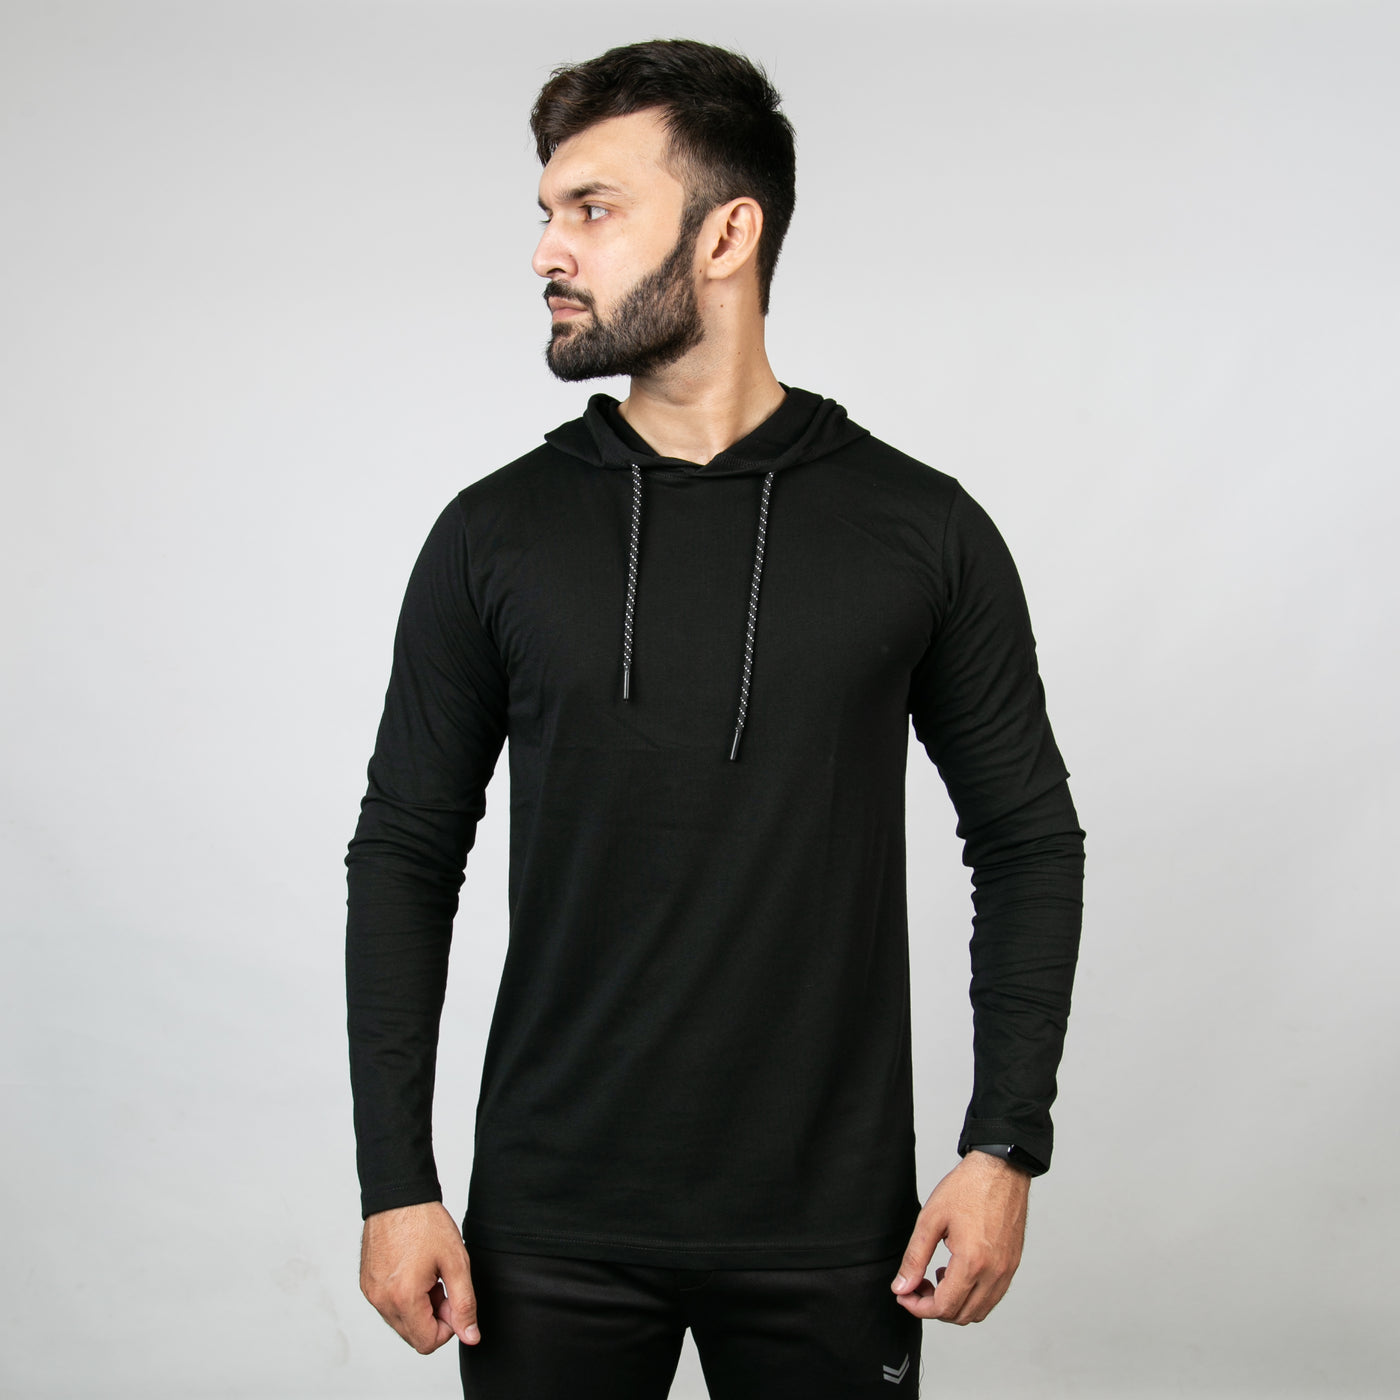 Black Hooded Full Sleeves T-Shirt